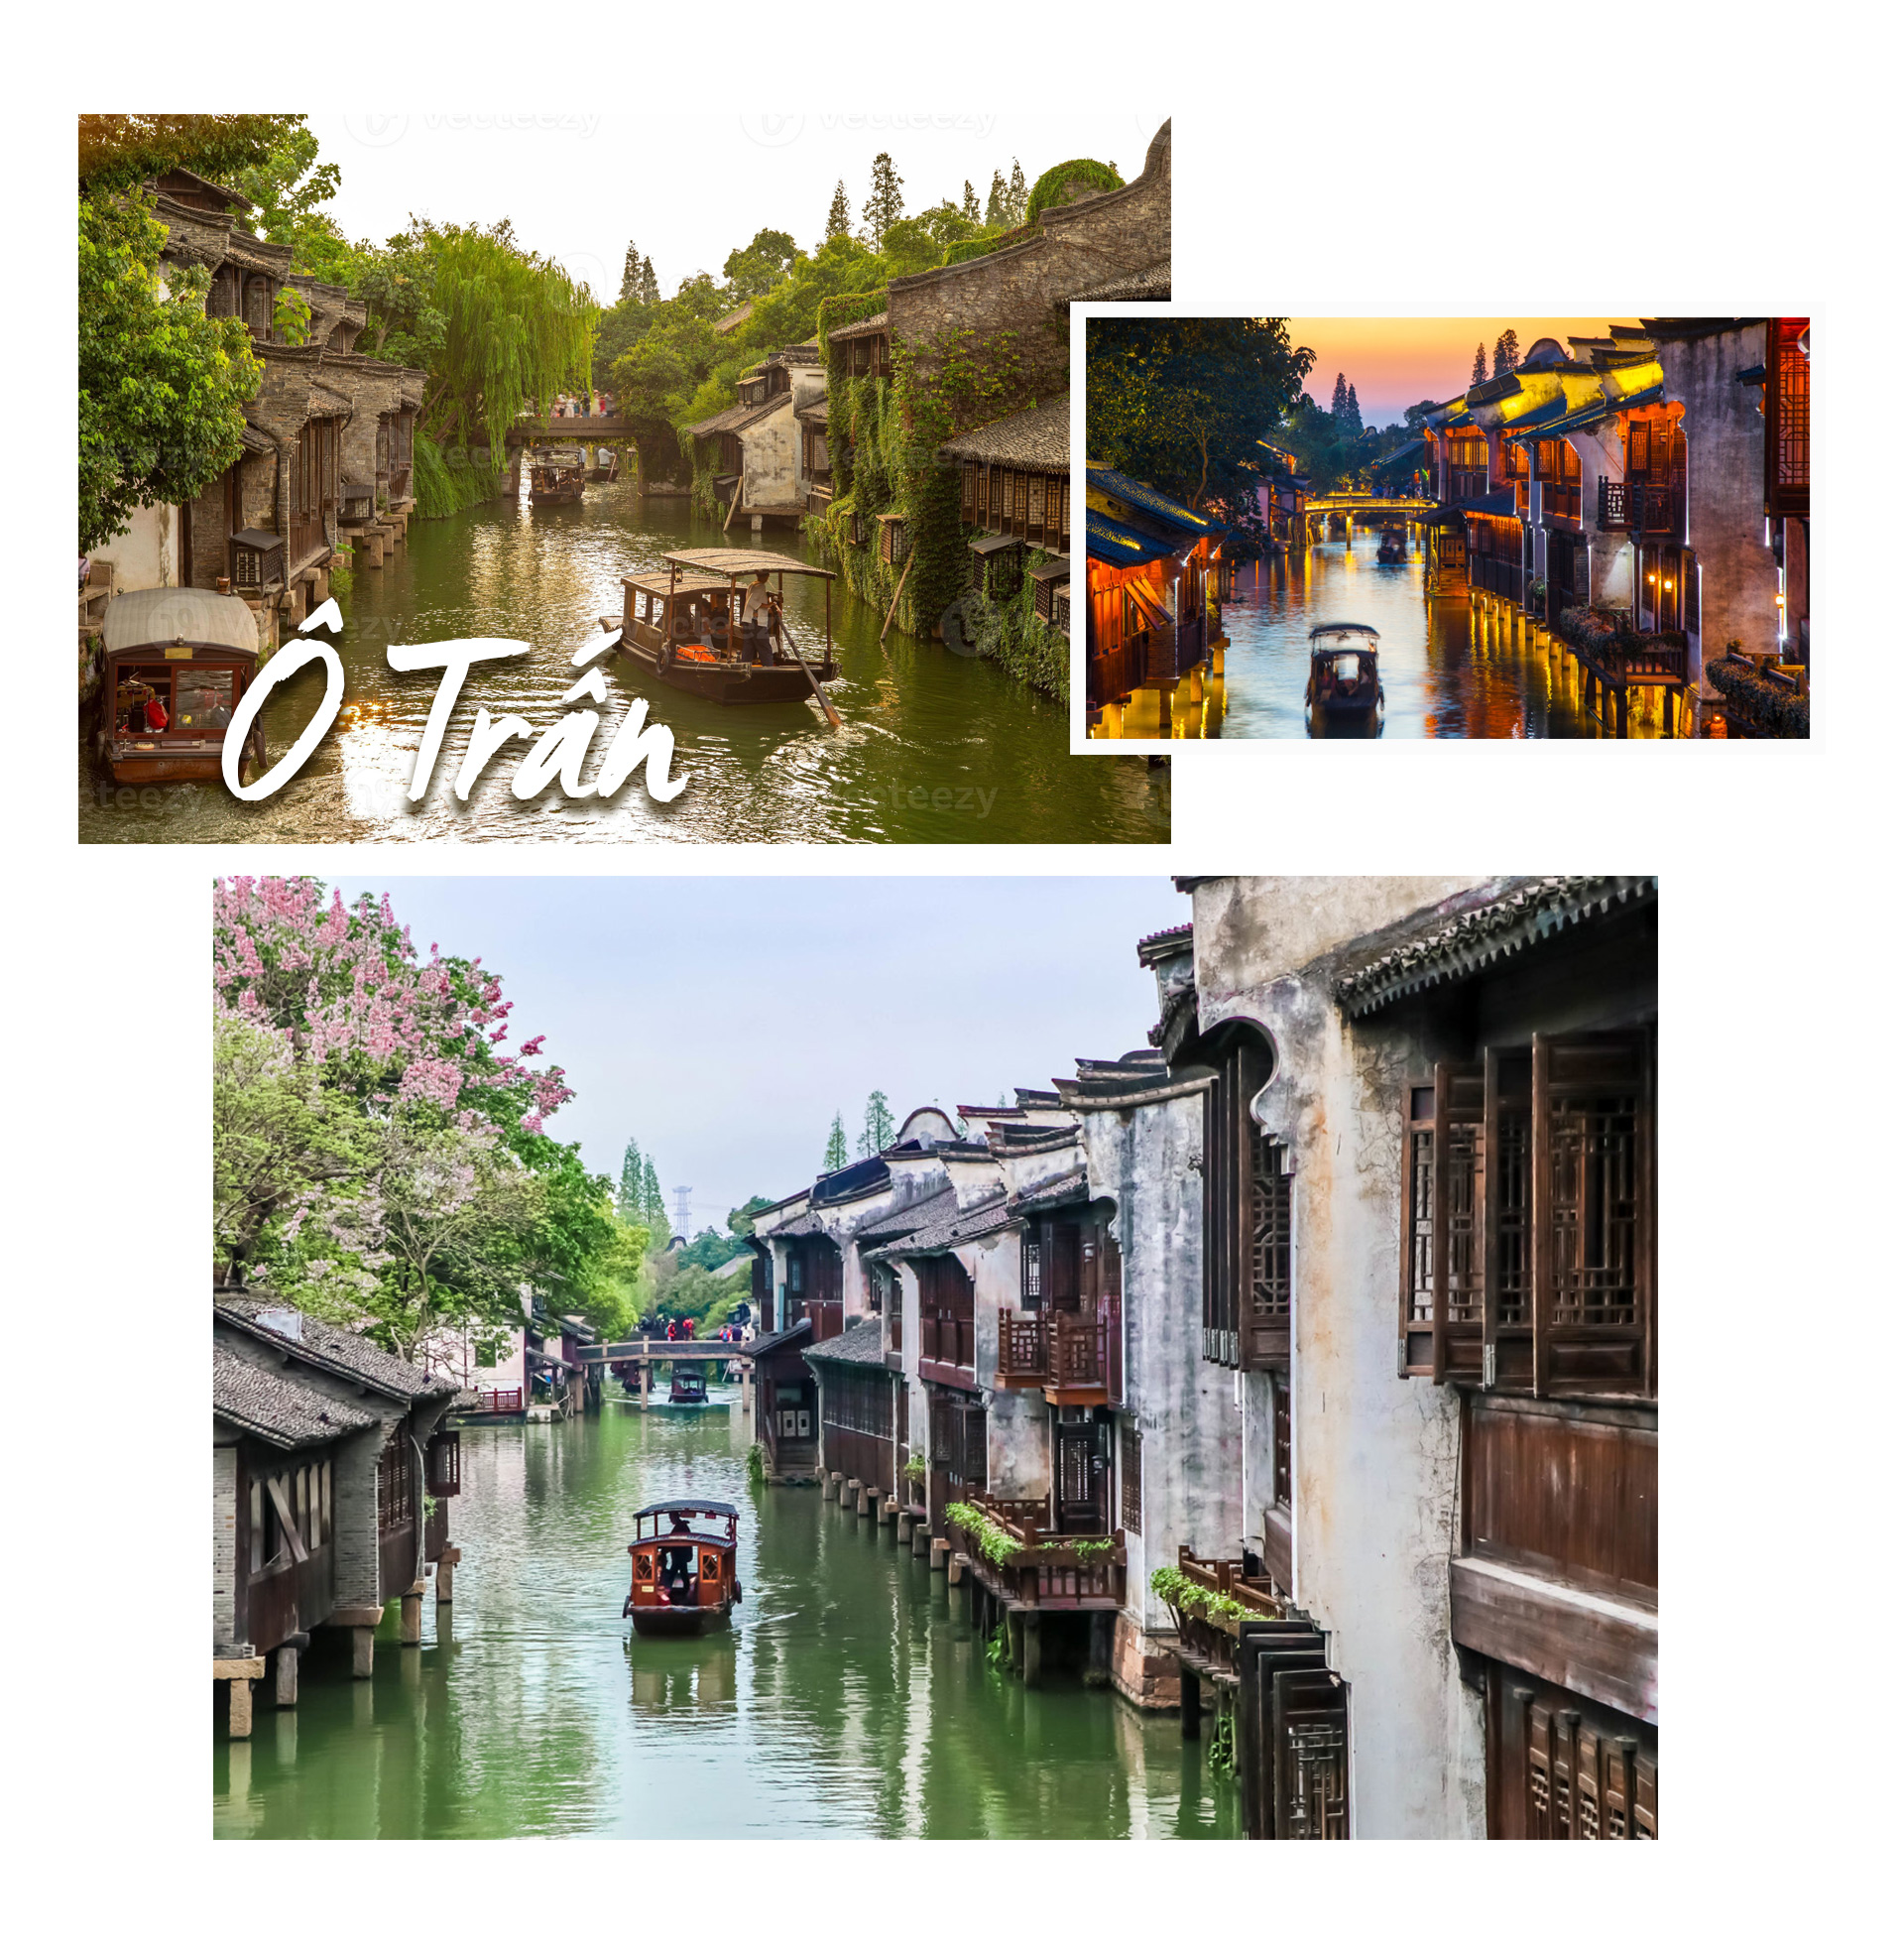 Khám phá 8 thị trấn cổ đẹp nhất Trung Quốc - 3